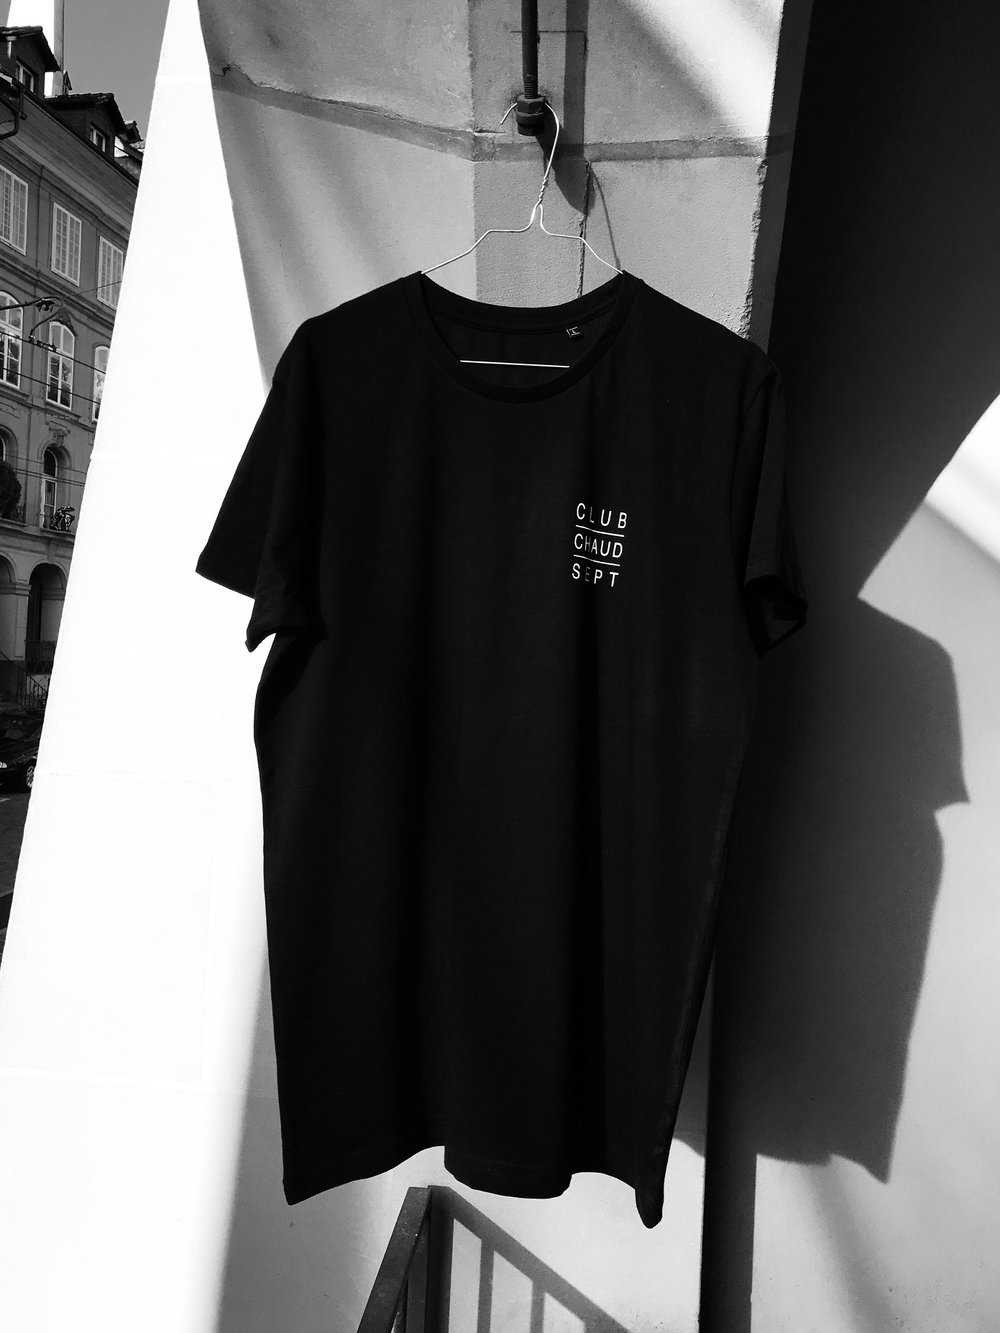 T-Shirt CLUB CHAUD SEPT - black